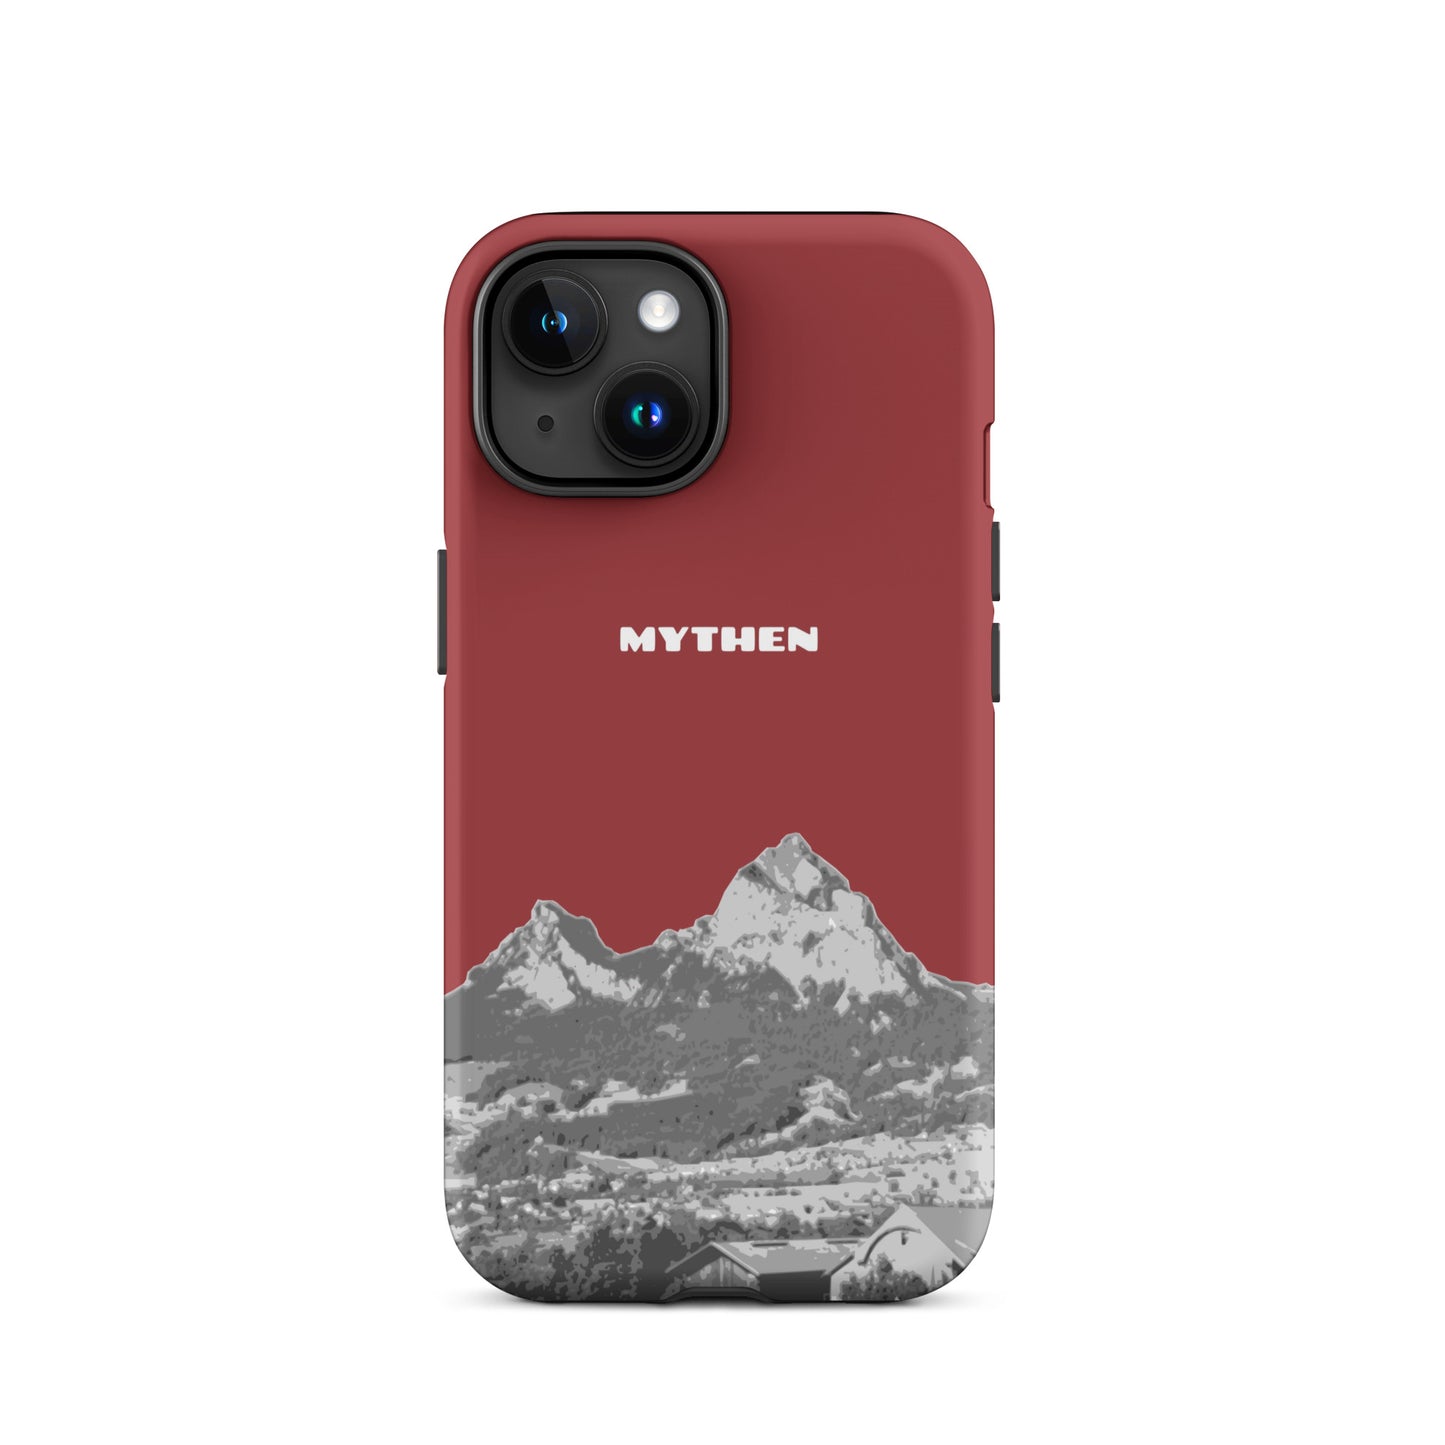 Hülle für das iPhone 15 von Apple in der Farbe Rot, die den Grossen Mythen und den Kleinen Mythen bei Schwyz zeigt. 